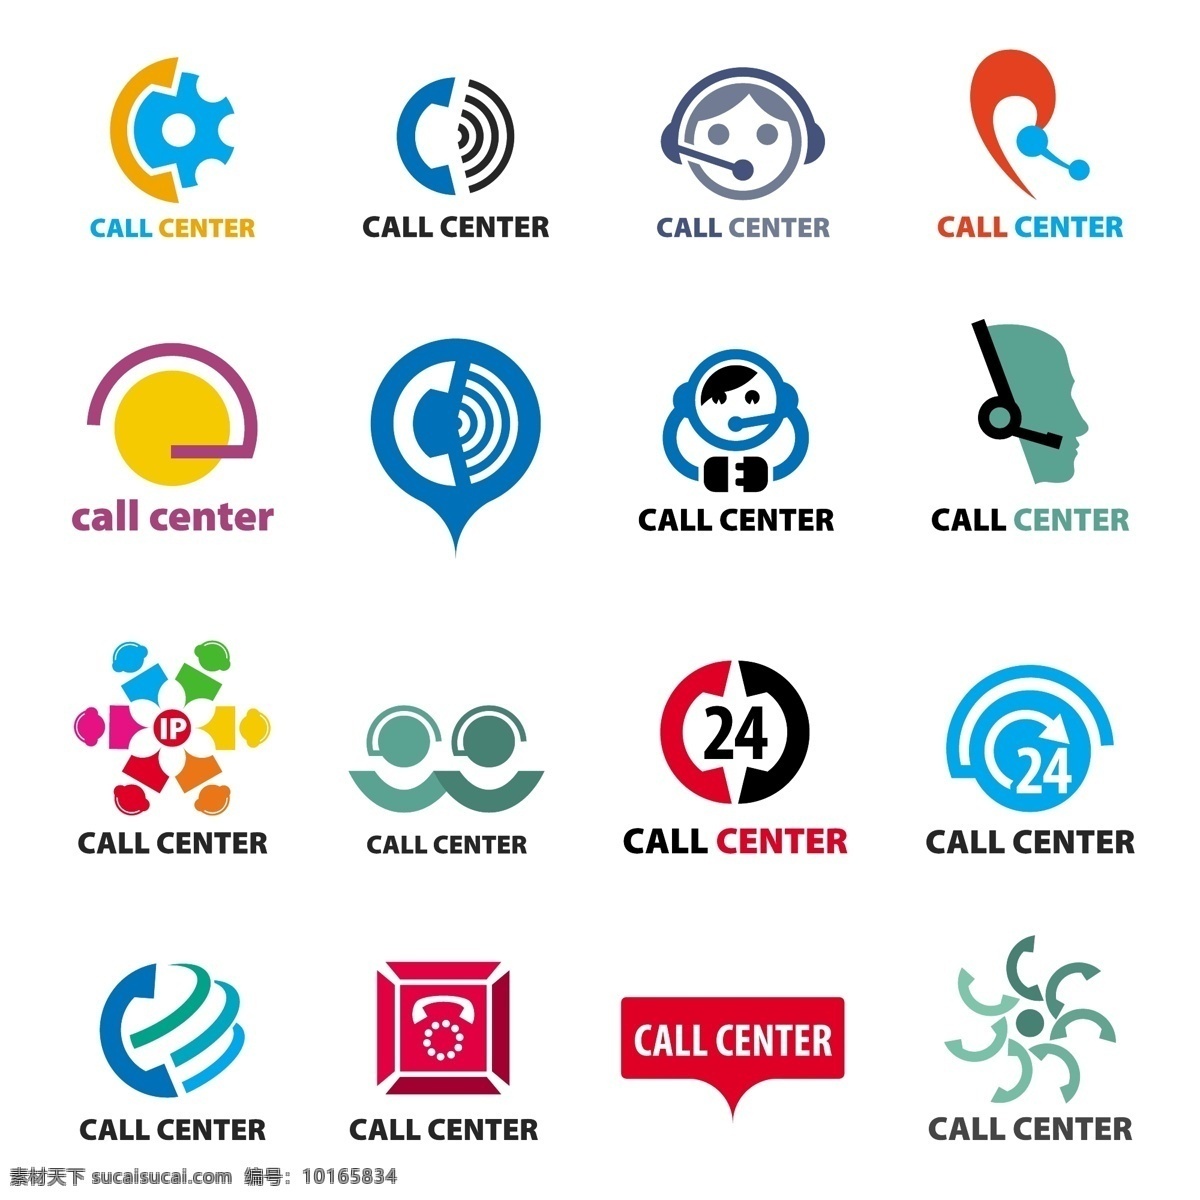 图标 抽象标志符号 企业公司标志 logo设计 矢量 标志图标 网页小图标